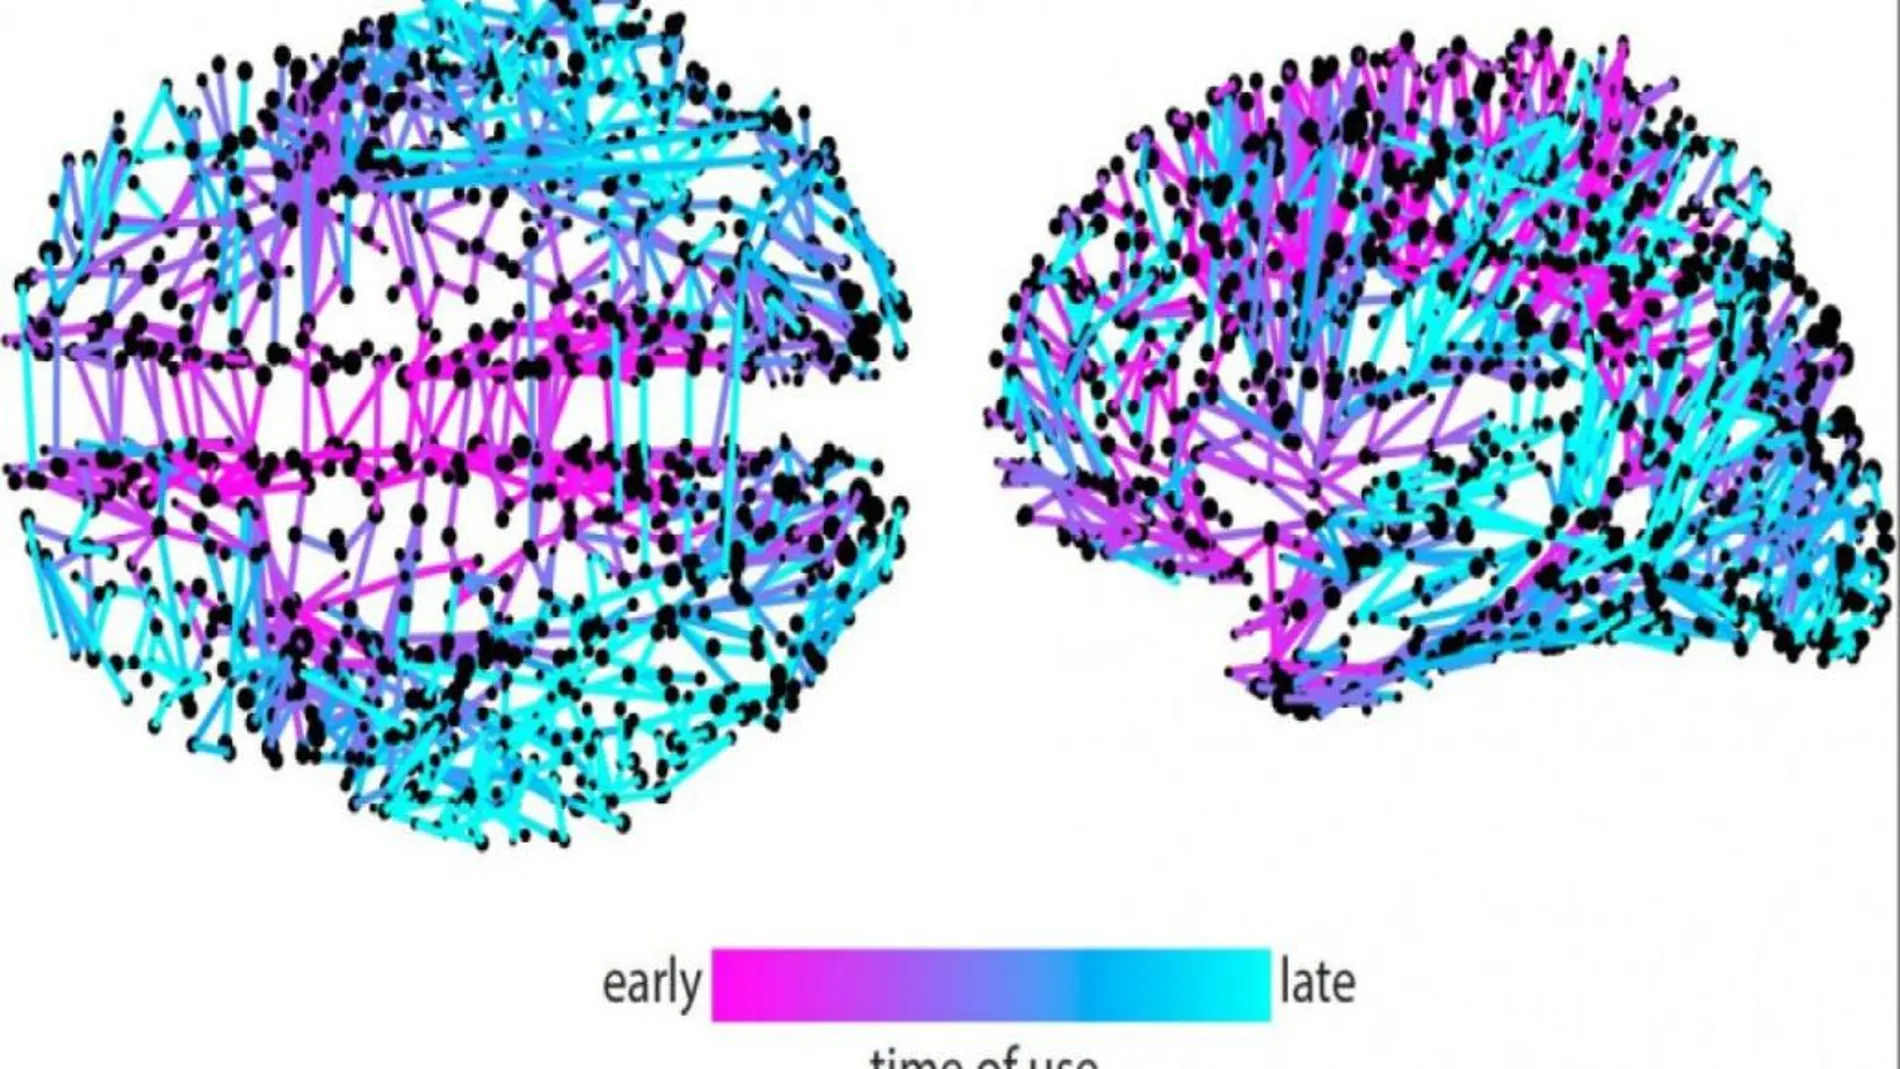 Esta imagen representa los momentos en que diferentes conexiones cerebrales se activan para difundir información. En general, la información parece propagarse rápidamente a partir de un núcleo compacto de vías centrales